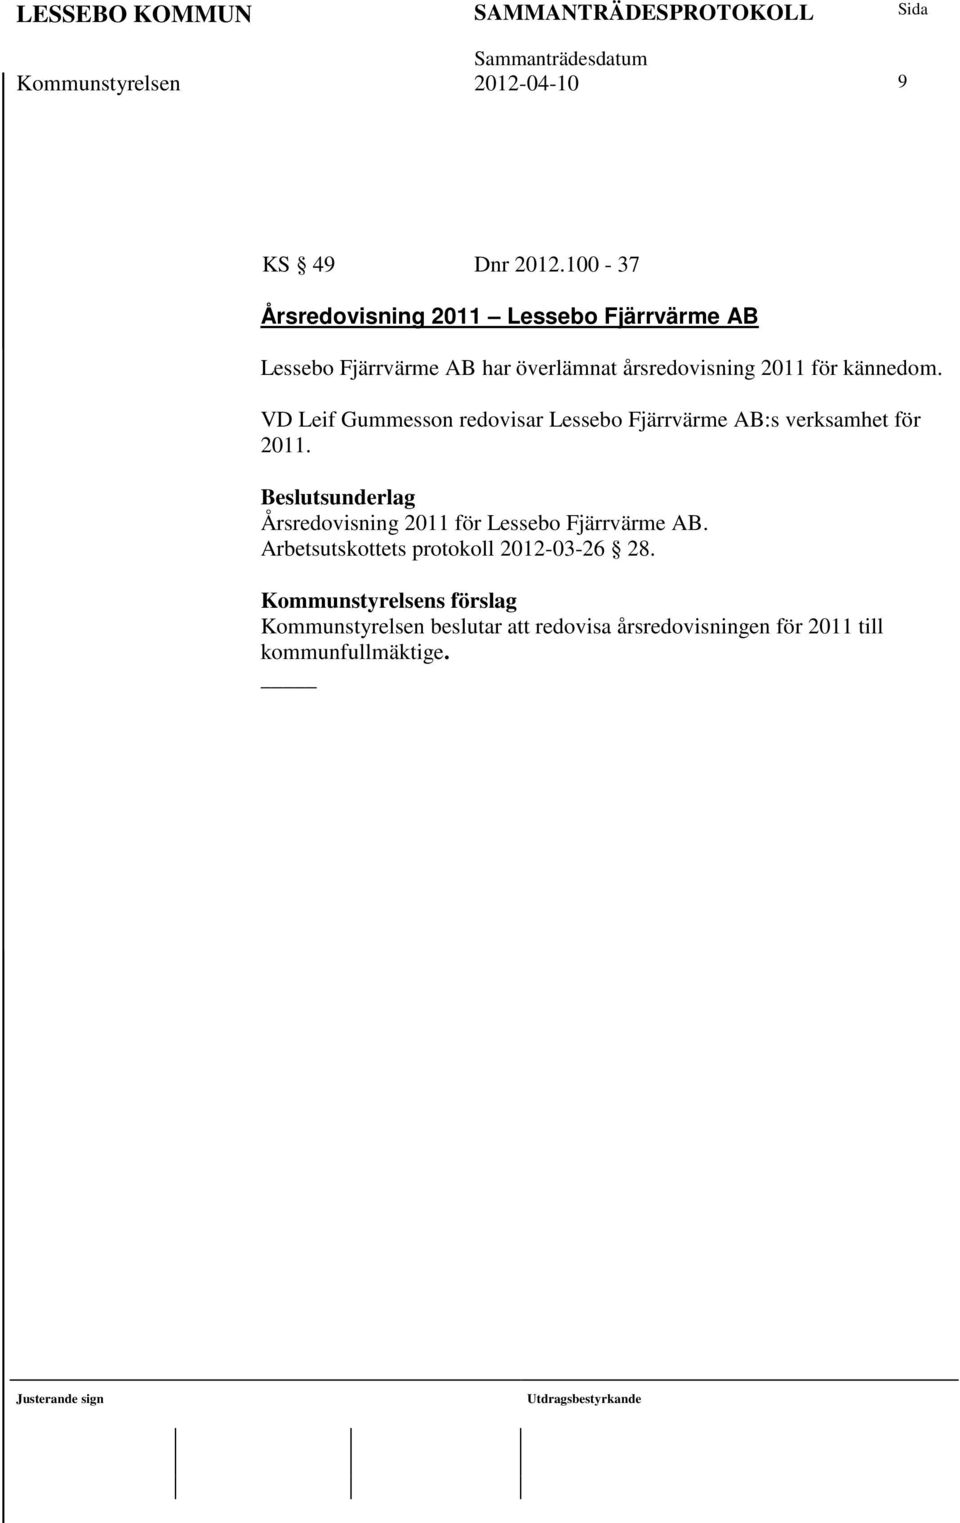 kännedom. VD Leif Gummesson redovisar Lessebo Fjärrvärme AB:s verksamhet för 2011.